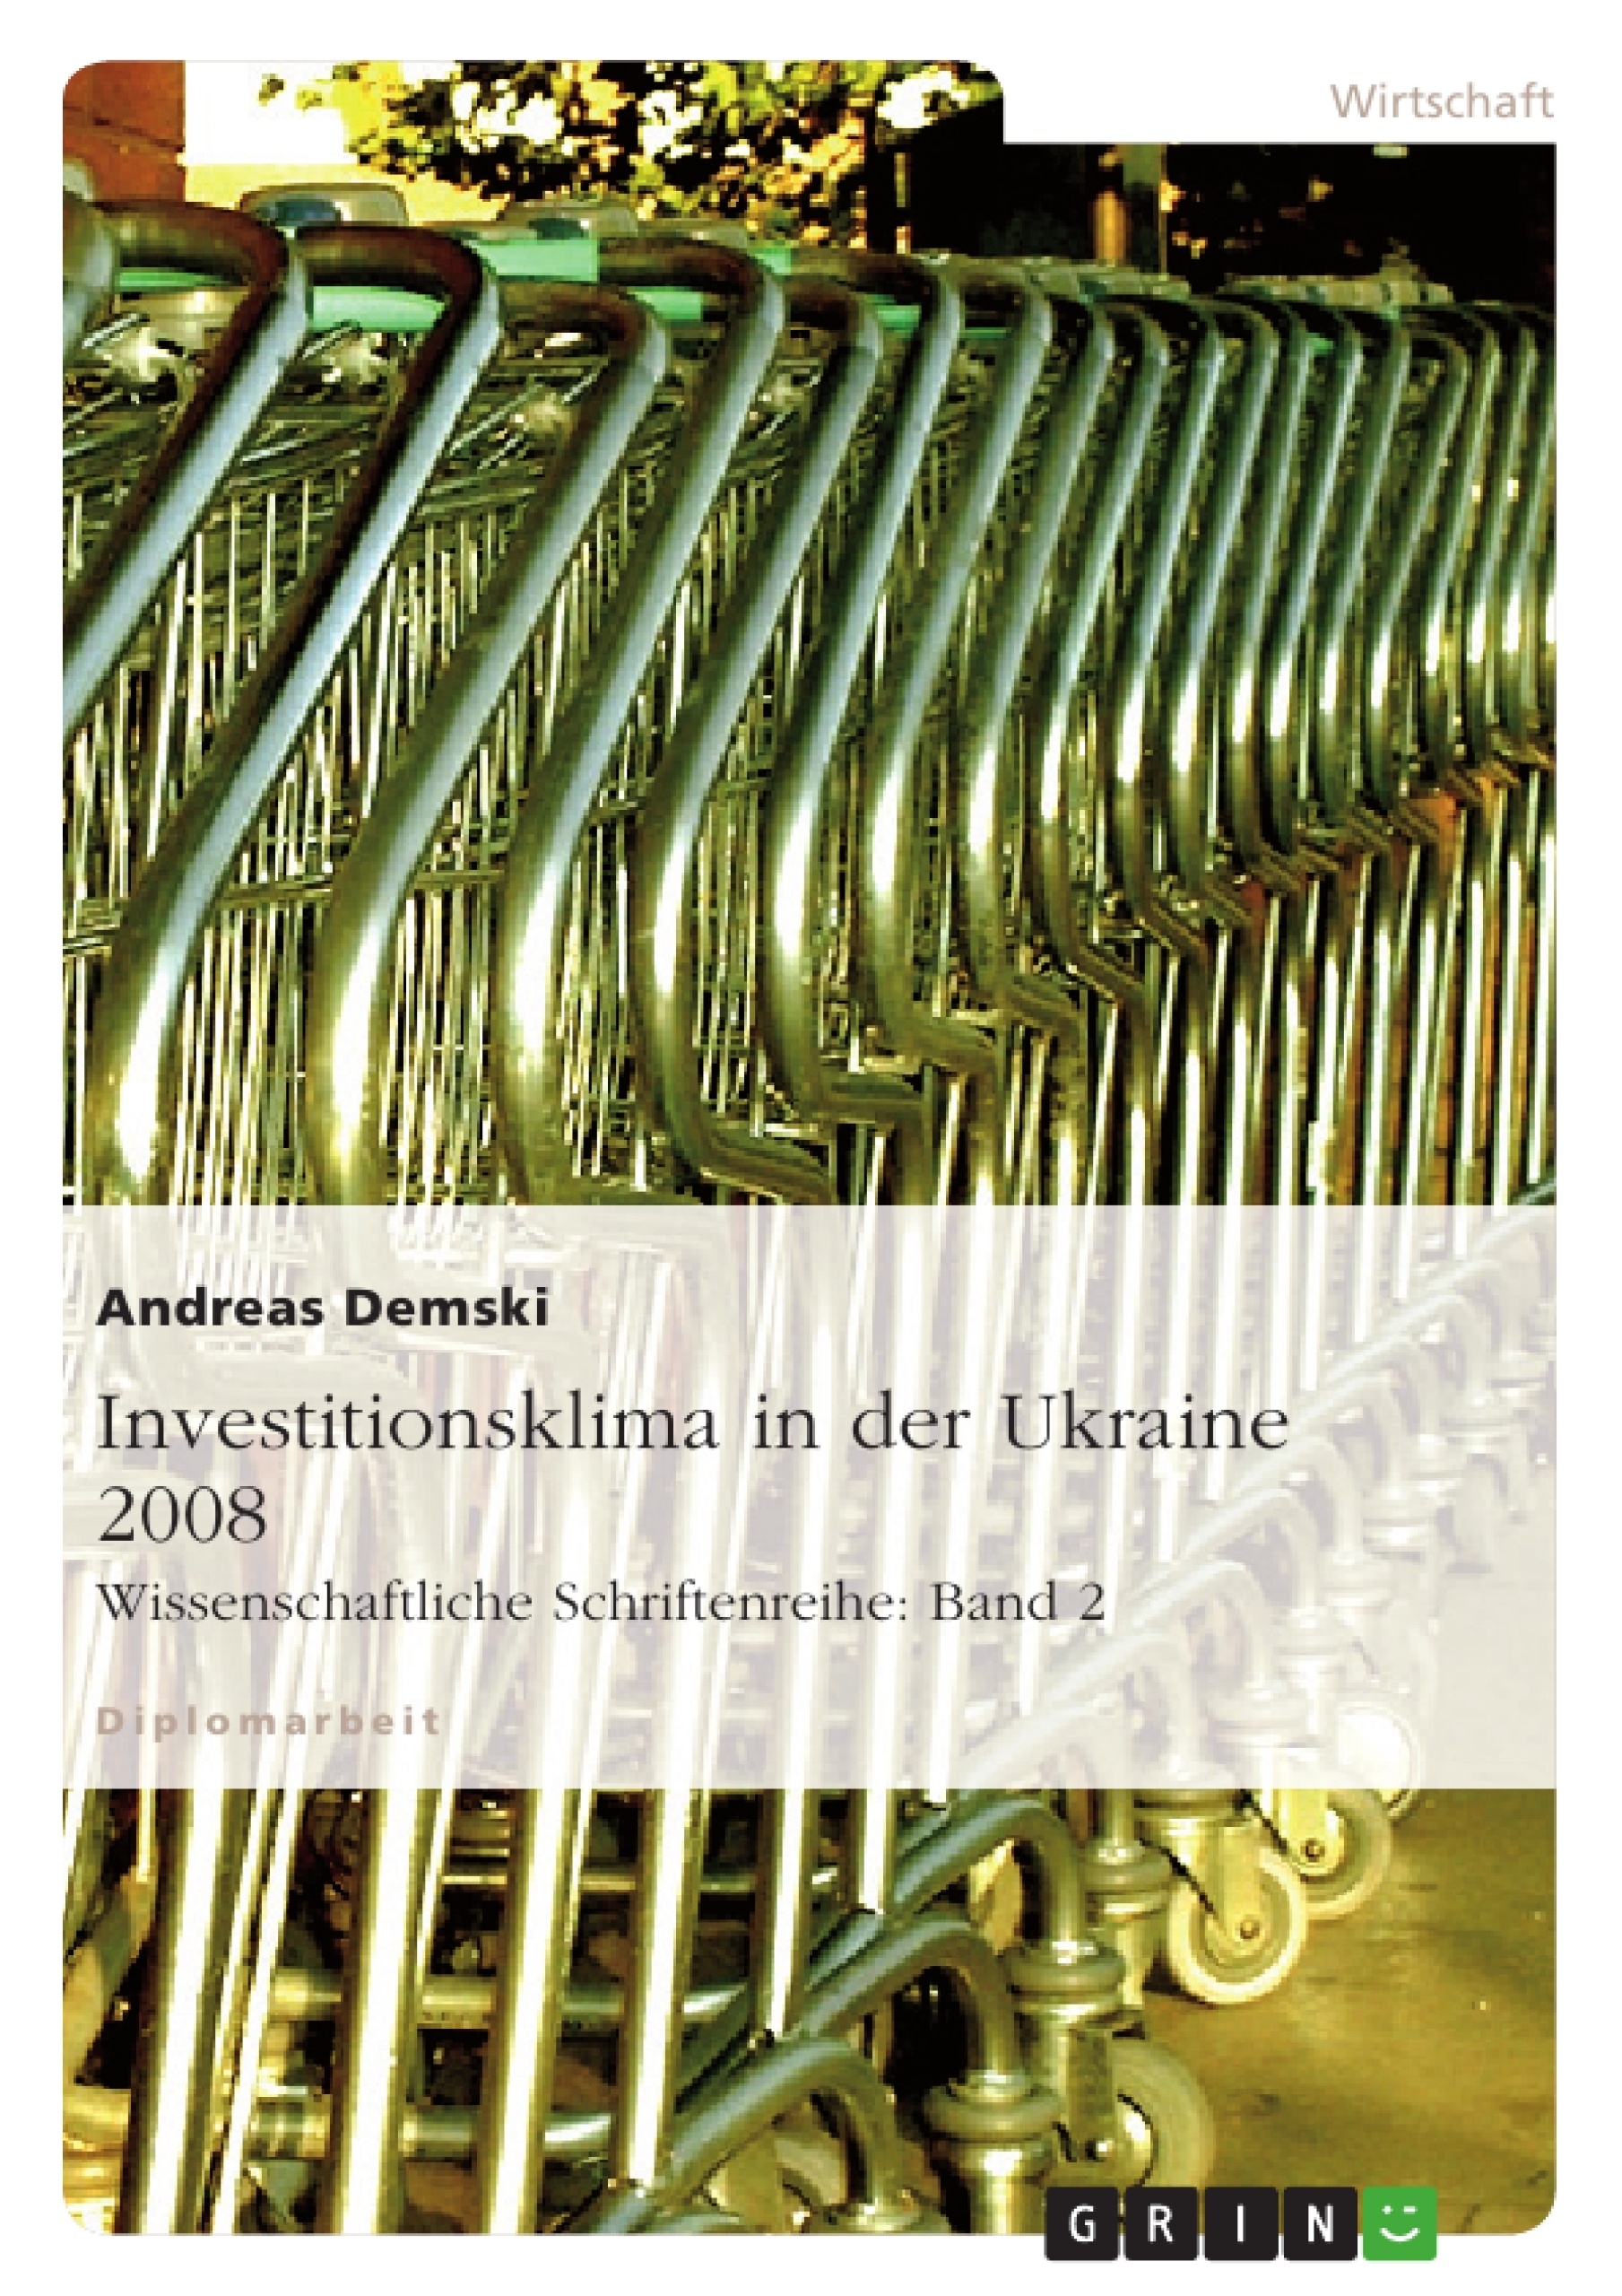 Title: Investitionsklima in der Ukraine 2008